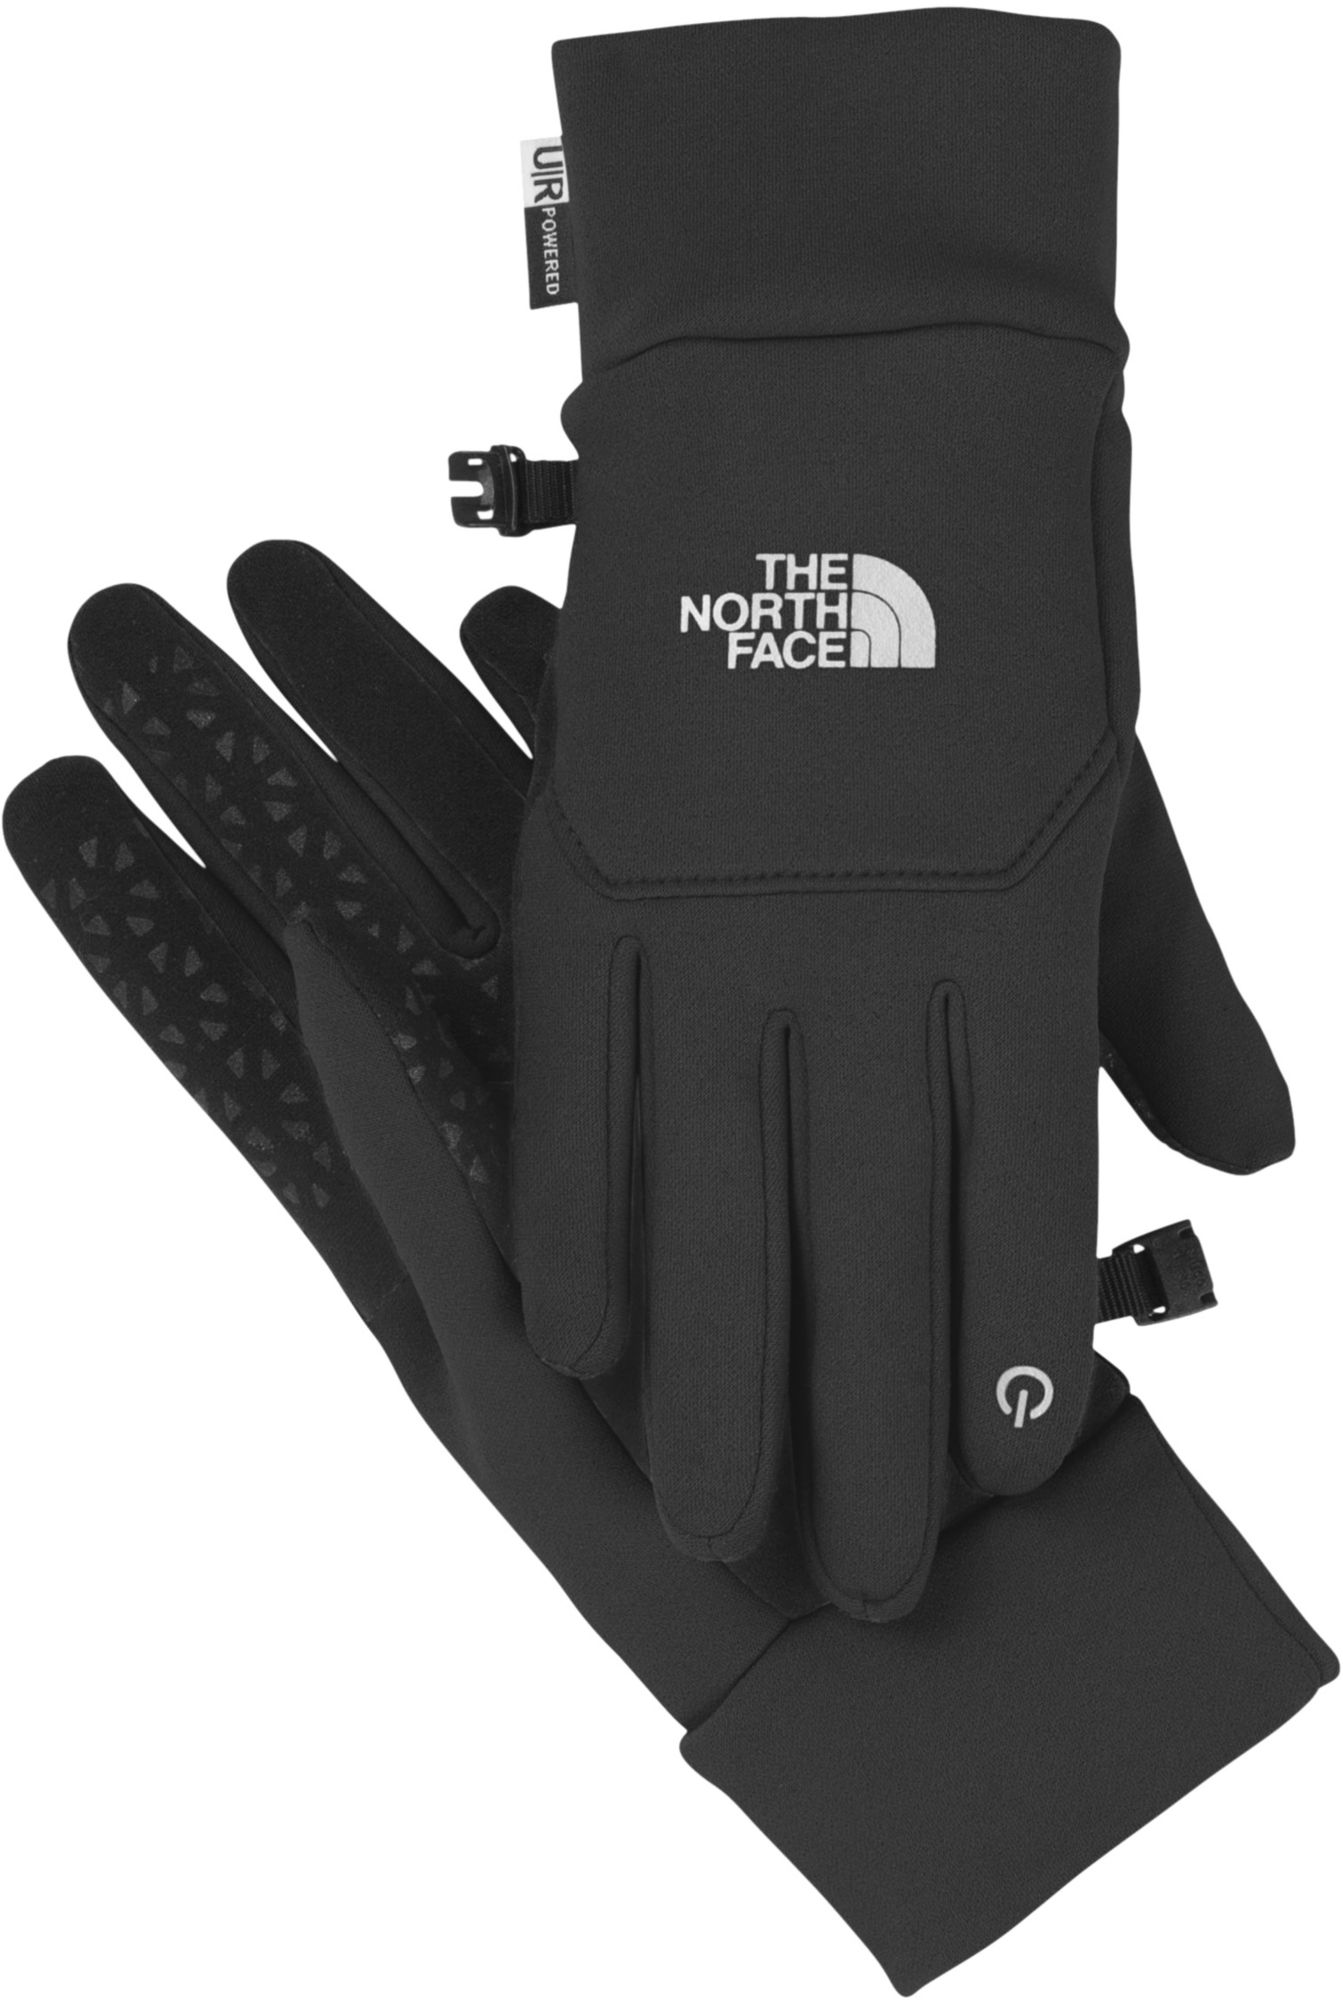 north face etip gloves women's